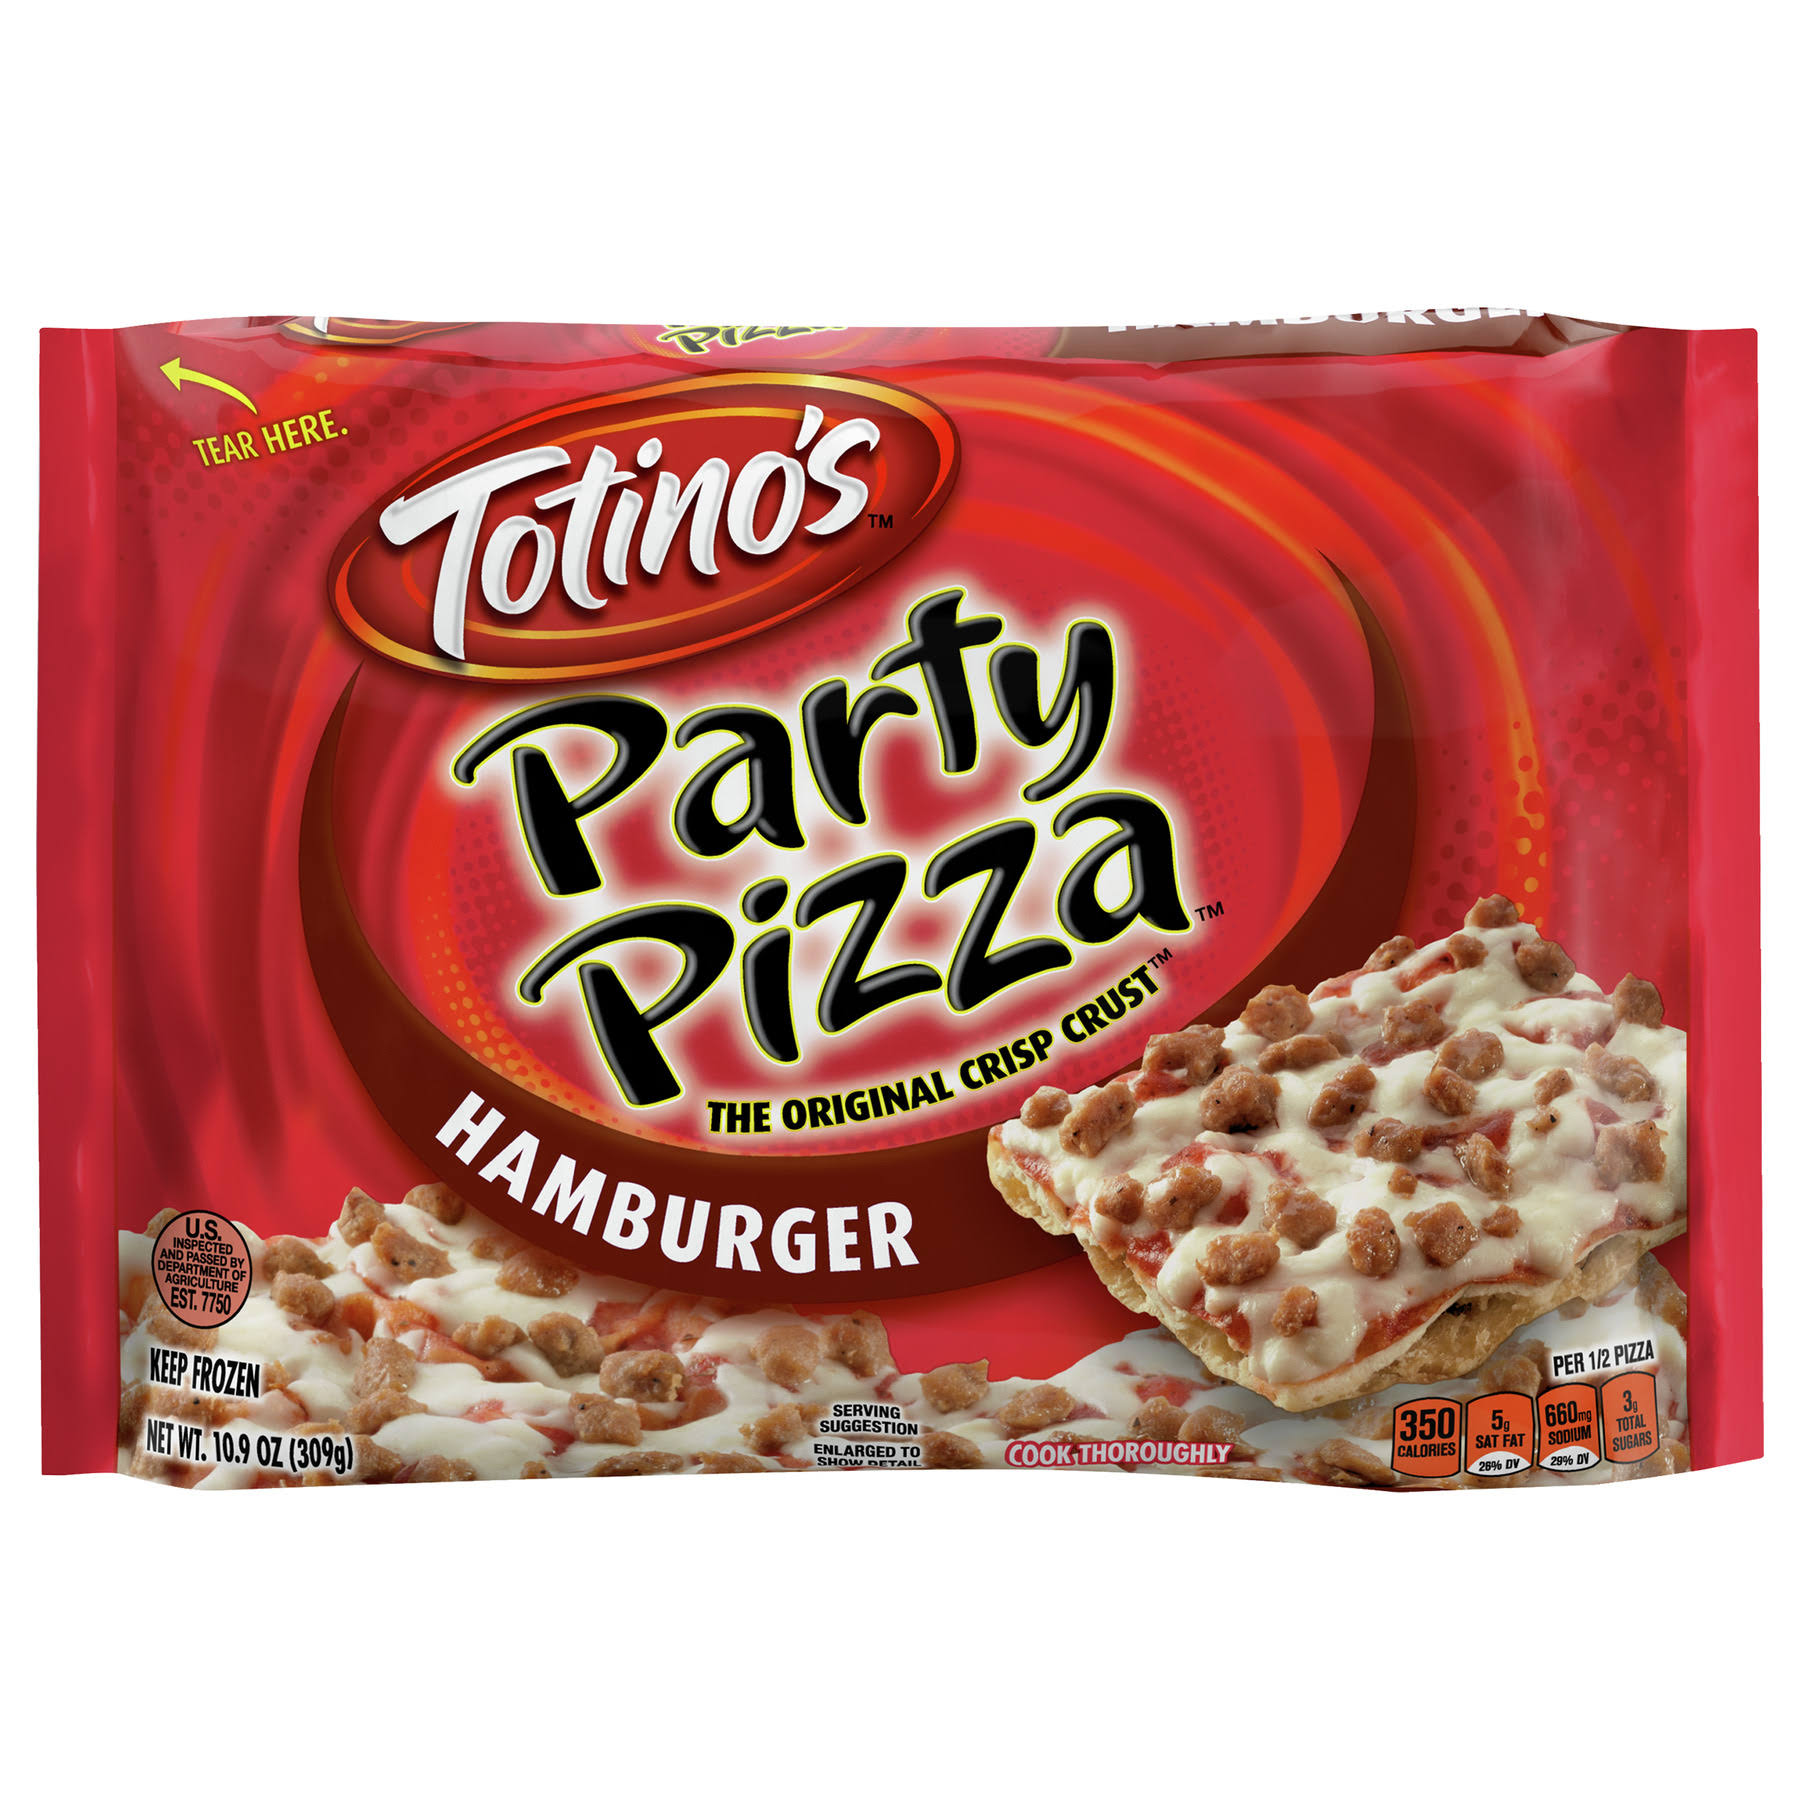 Totino's Original Crisp Crust Party Pizza - Hamburger, 10.9oz